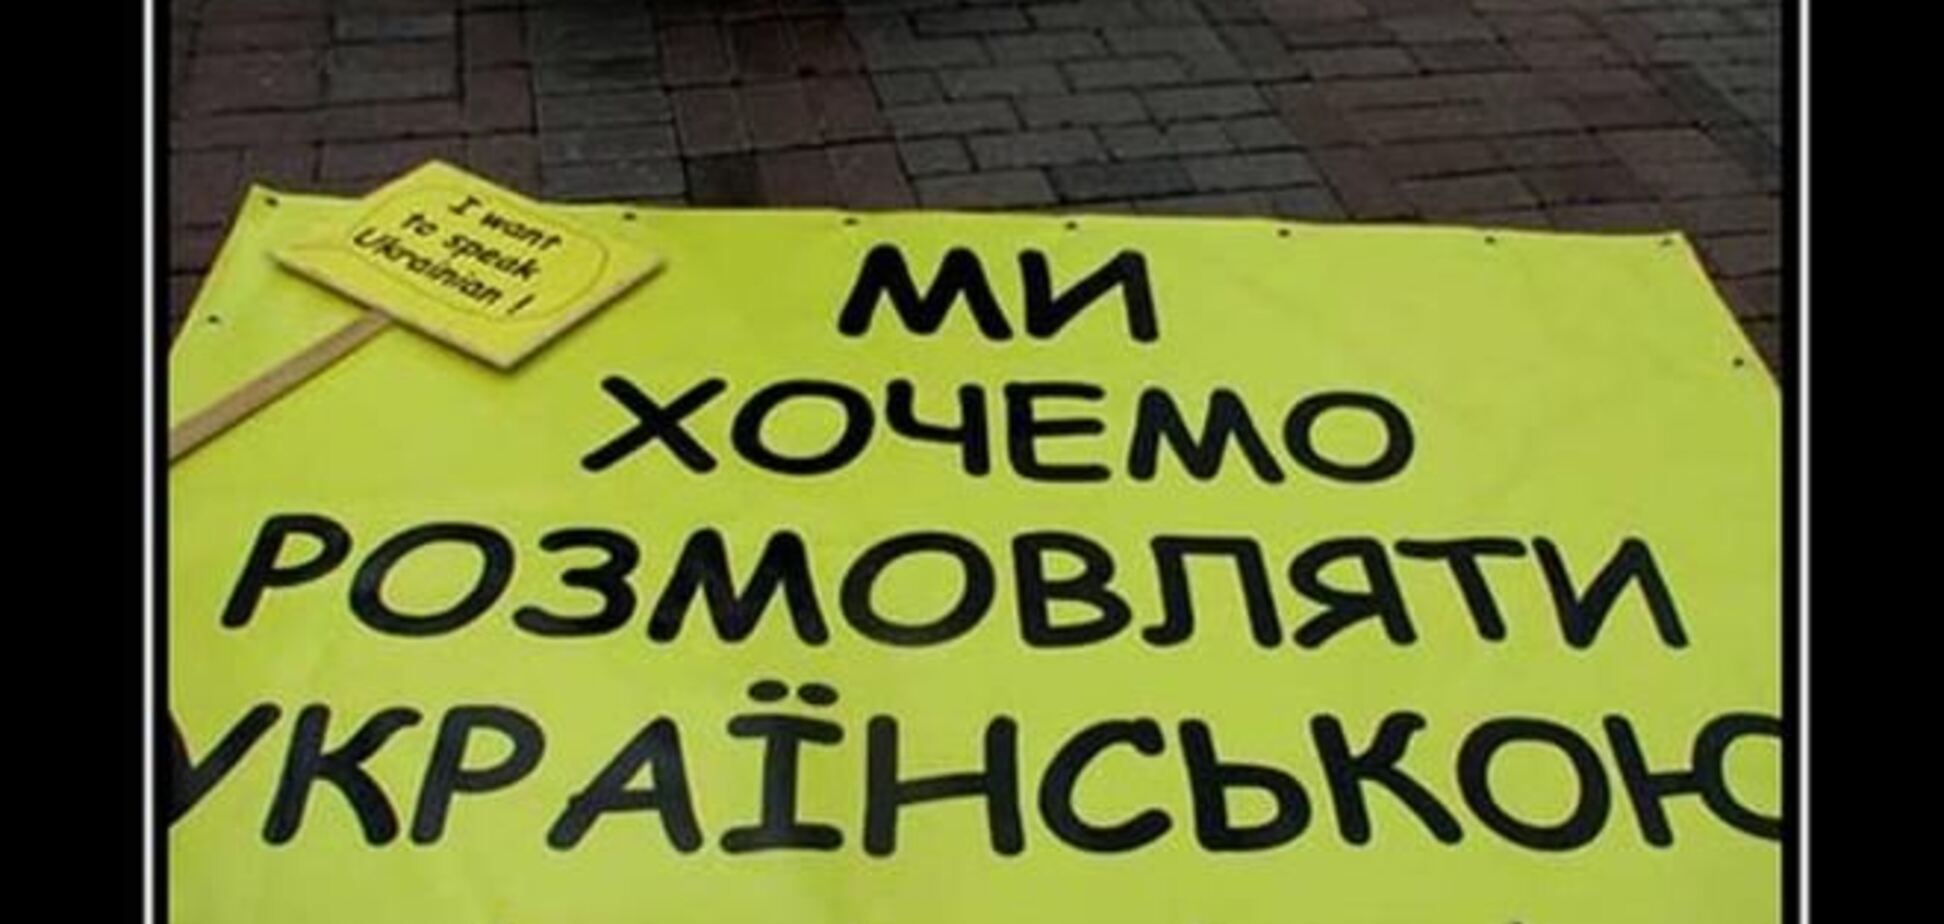 Яценюк предлагает Путину сделать украинский язык вторым государственным в России